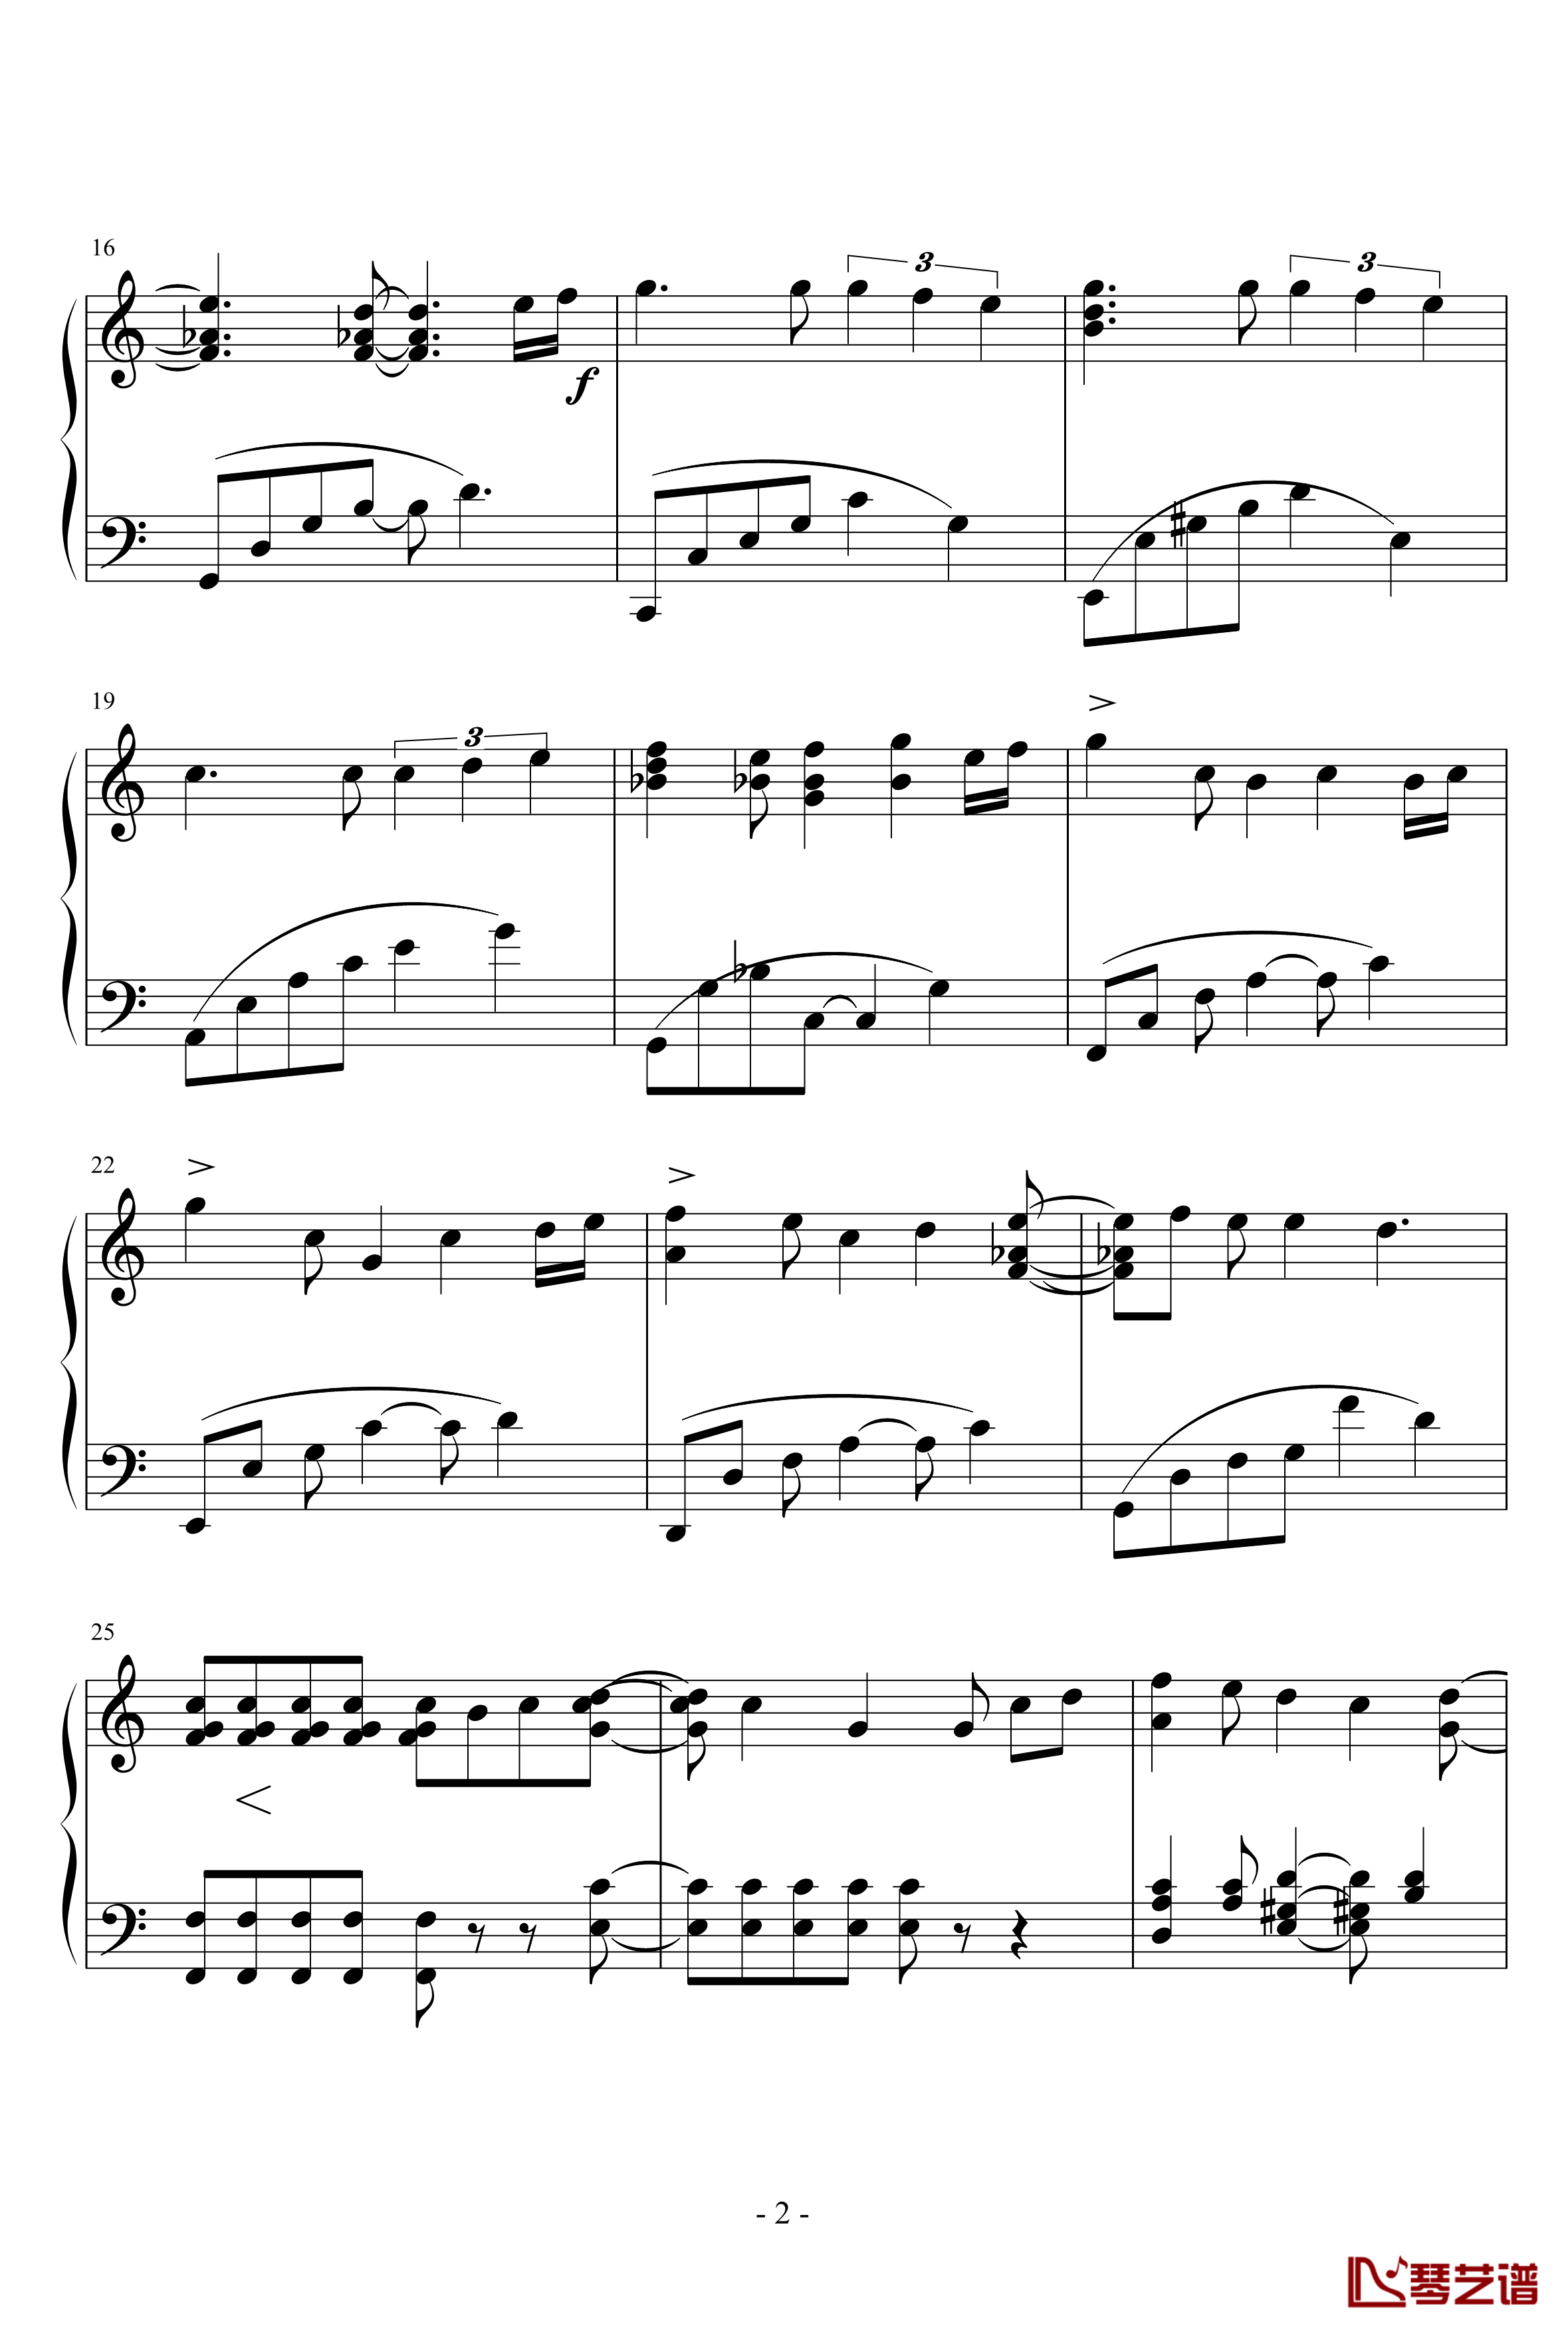 小星星幻想曲钢琴谱-完美版-V.K克2